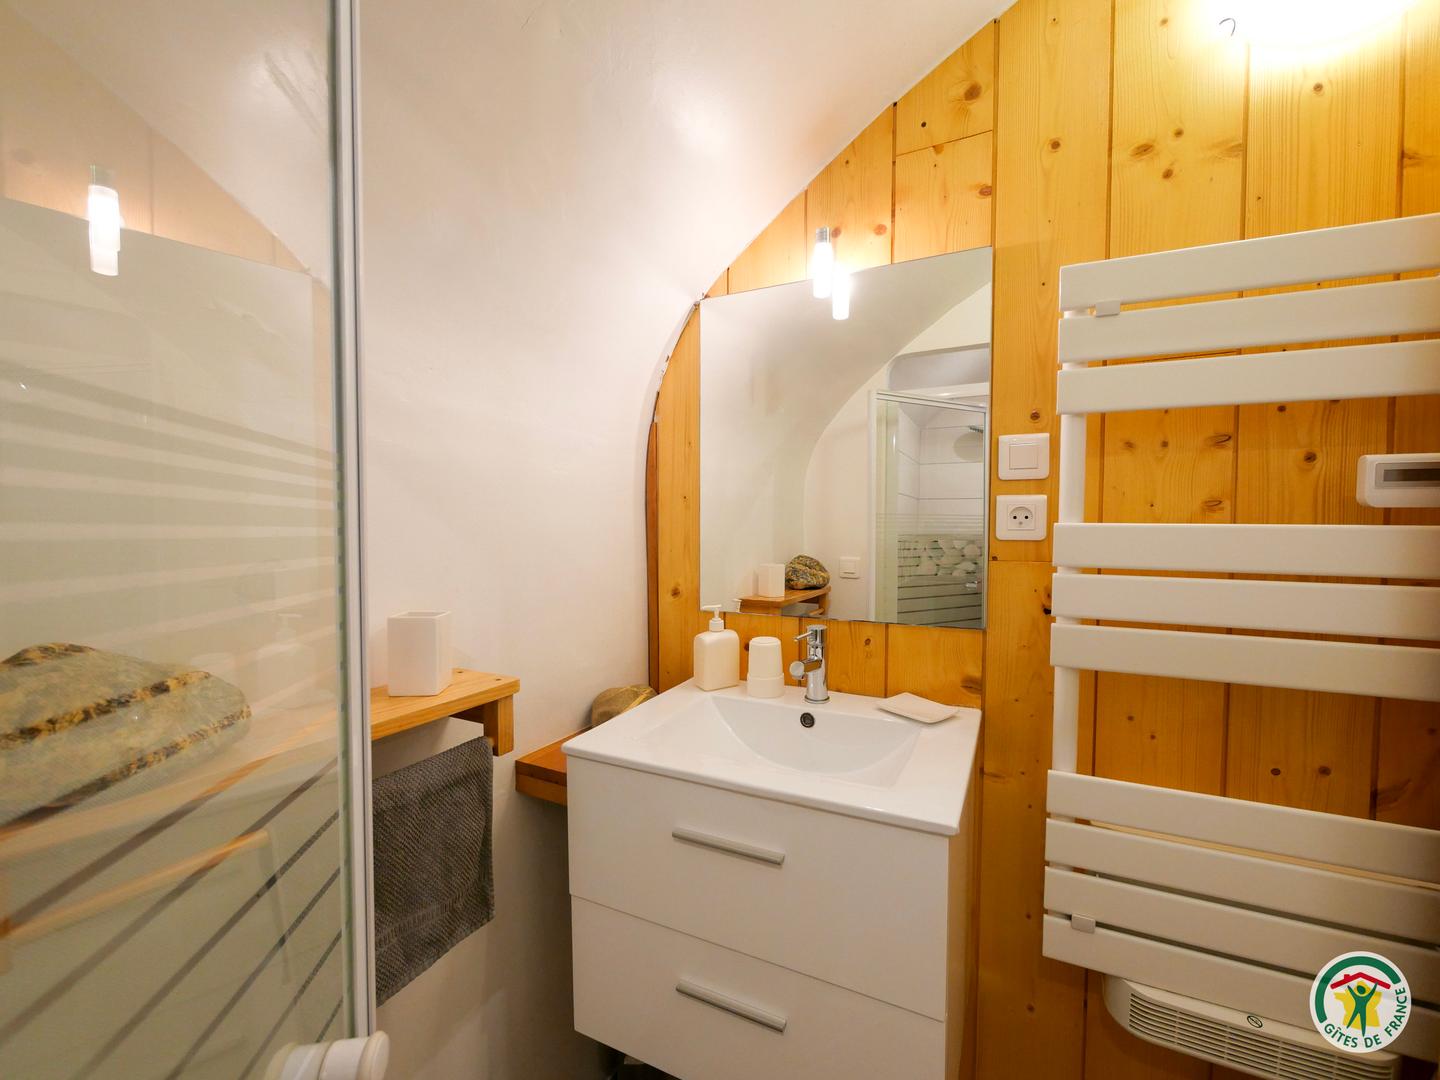 Hôte GreenGo: Gîtes montagnards avec sauna tonneau bois, Gap - Image 36